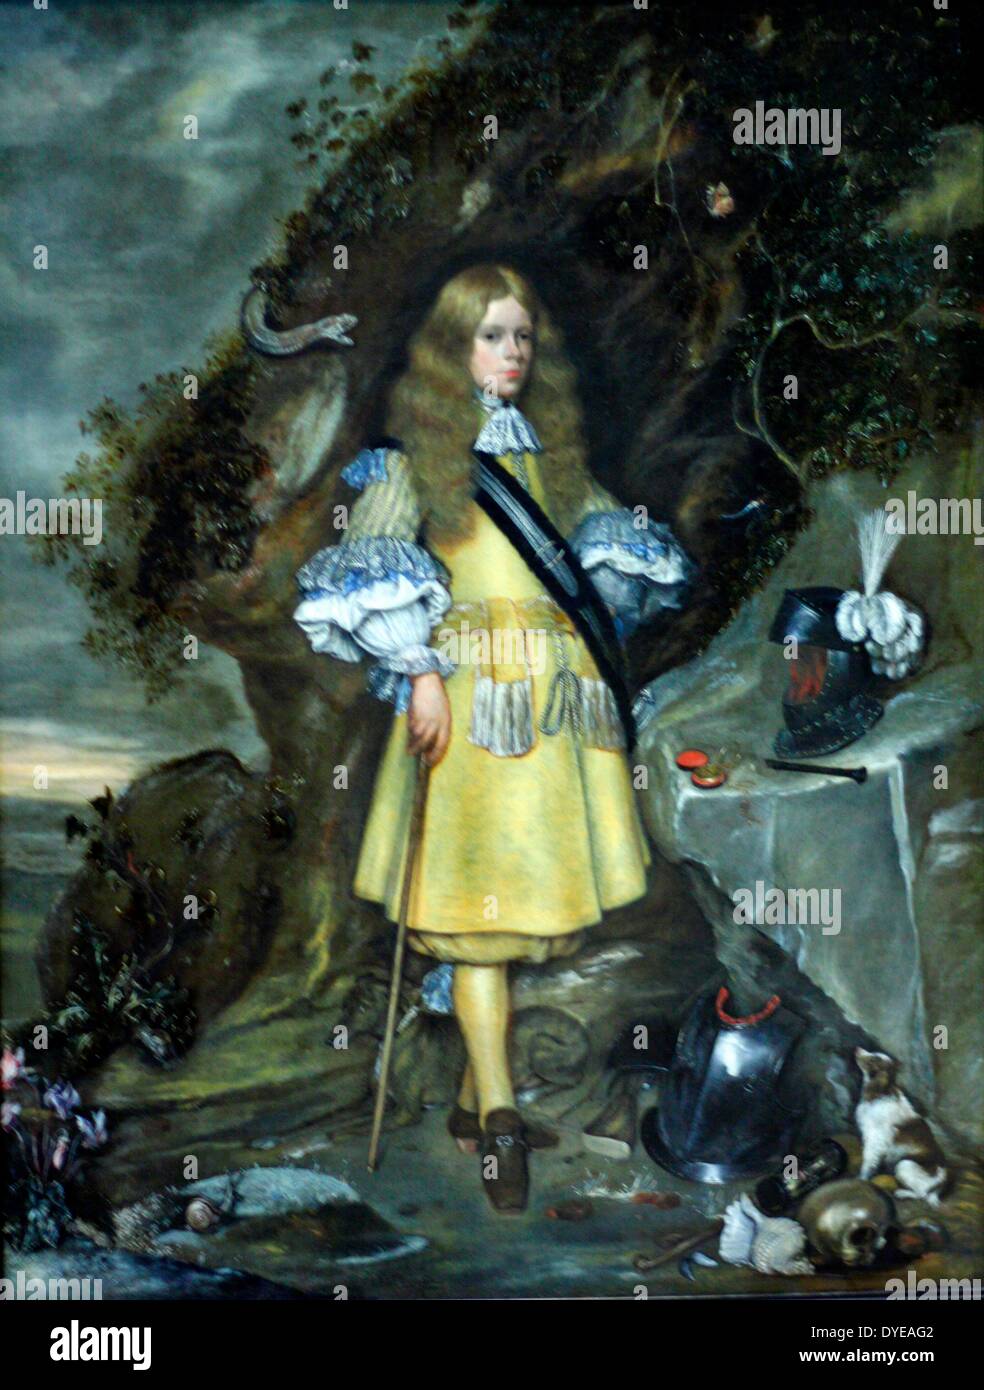 Ritratto Memoriale di Mosè ter Borch. Gerard ter Borch (1617-1681) e Gesina ter borch (1633-1690) olio su tela, 1667-1669. I due pittori prodotto questo ritratto per commemorare il loro fratello più giovane, di Mosè che era nato nel 1645. Mosè è morto nel 1667 durante l'assalto di Fort Languard vicino a Felixstowe in Inghilterra. Egli aveva servito nella marina olandese contro l'inglese a partire dal 1664. Nella pittura Mosè è circondato dai simboli che alludono alla sua vita militare: tempo (l'orologio da tasca), morte (il cranio), l'eternità (l'Edera sulle rocce) e lealtà (i cani). Foto Stock